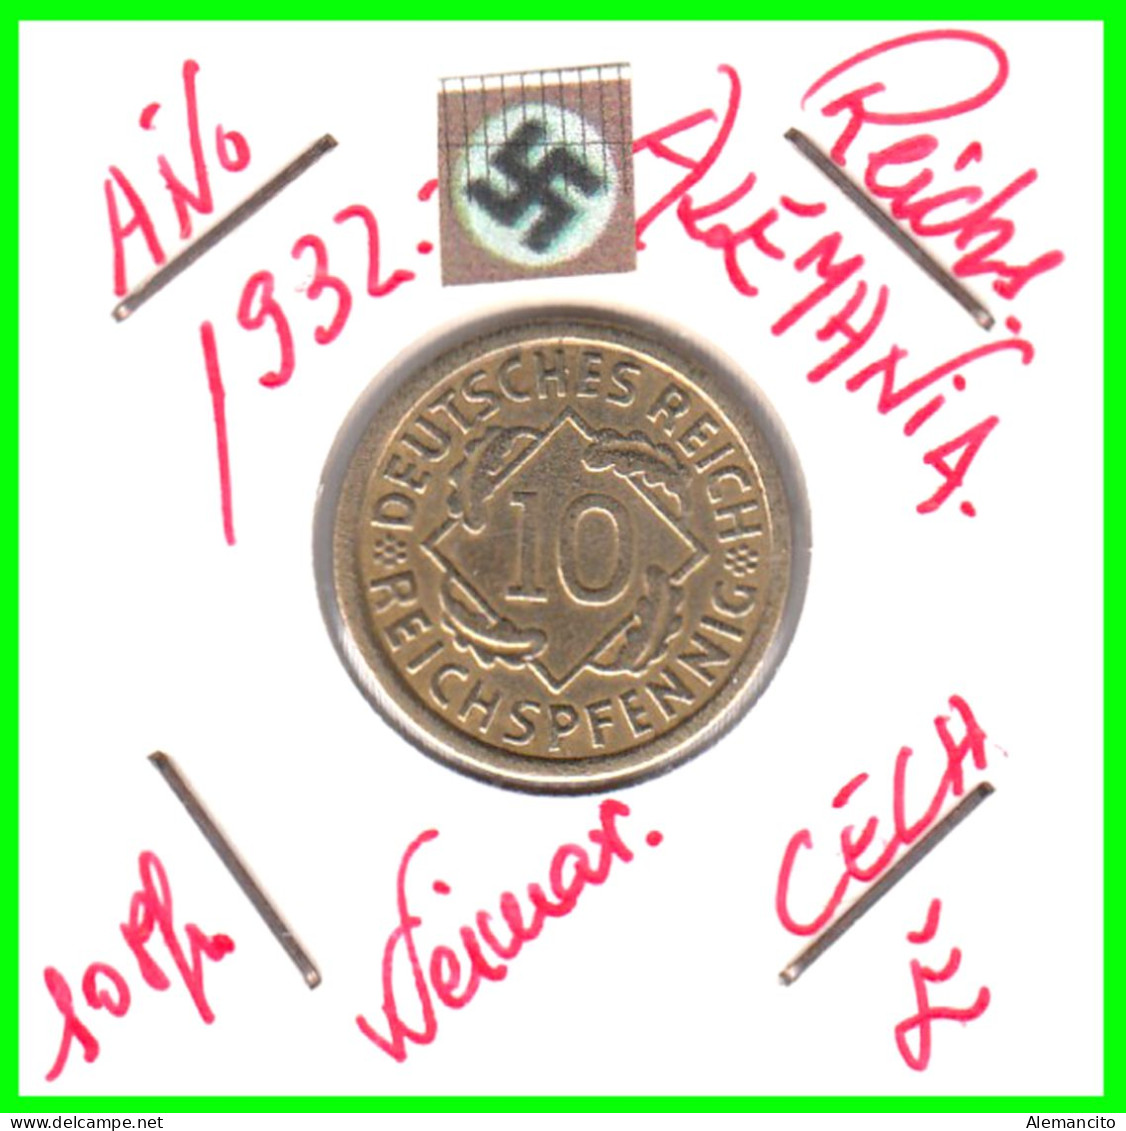 GERMANY REPÚBLICA DE WEIMAR 10 PFENNIG DE PENSIÓN ( 1932 CECA - E ) MONEDA DEL AÑO 1923-1936 (RENTENPFENNIG KM # 32 - 10 Rentenpfennig & 10 Reichspfennig